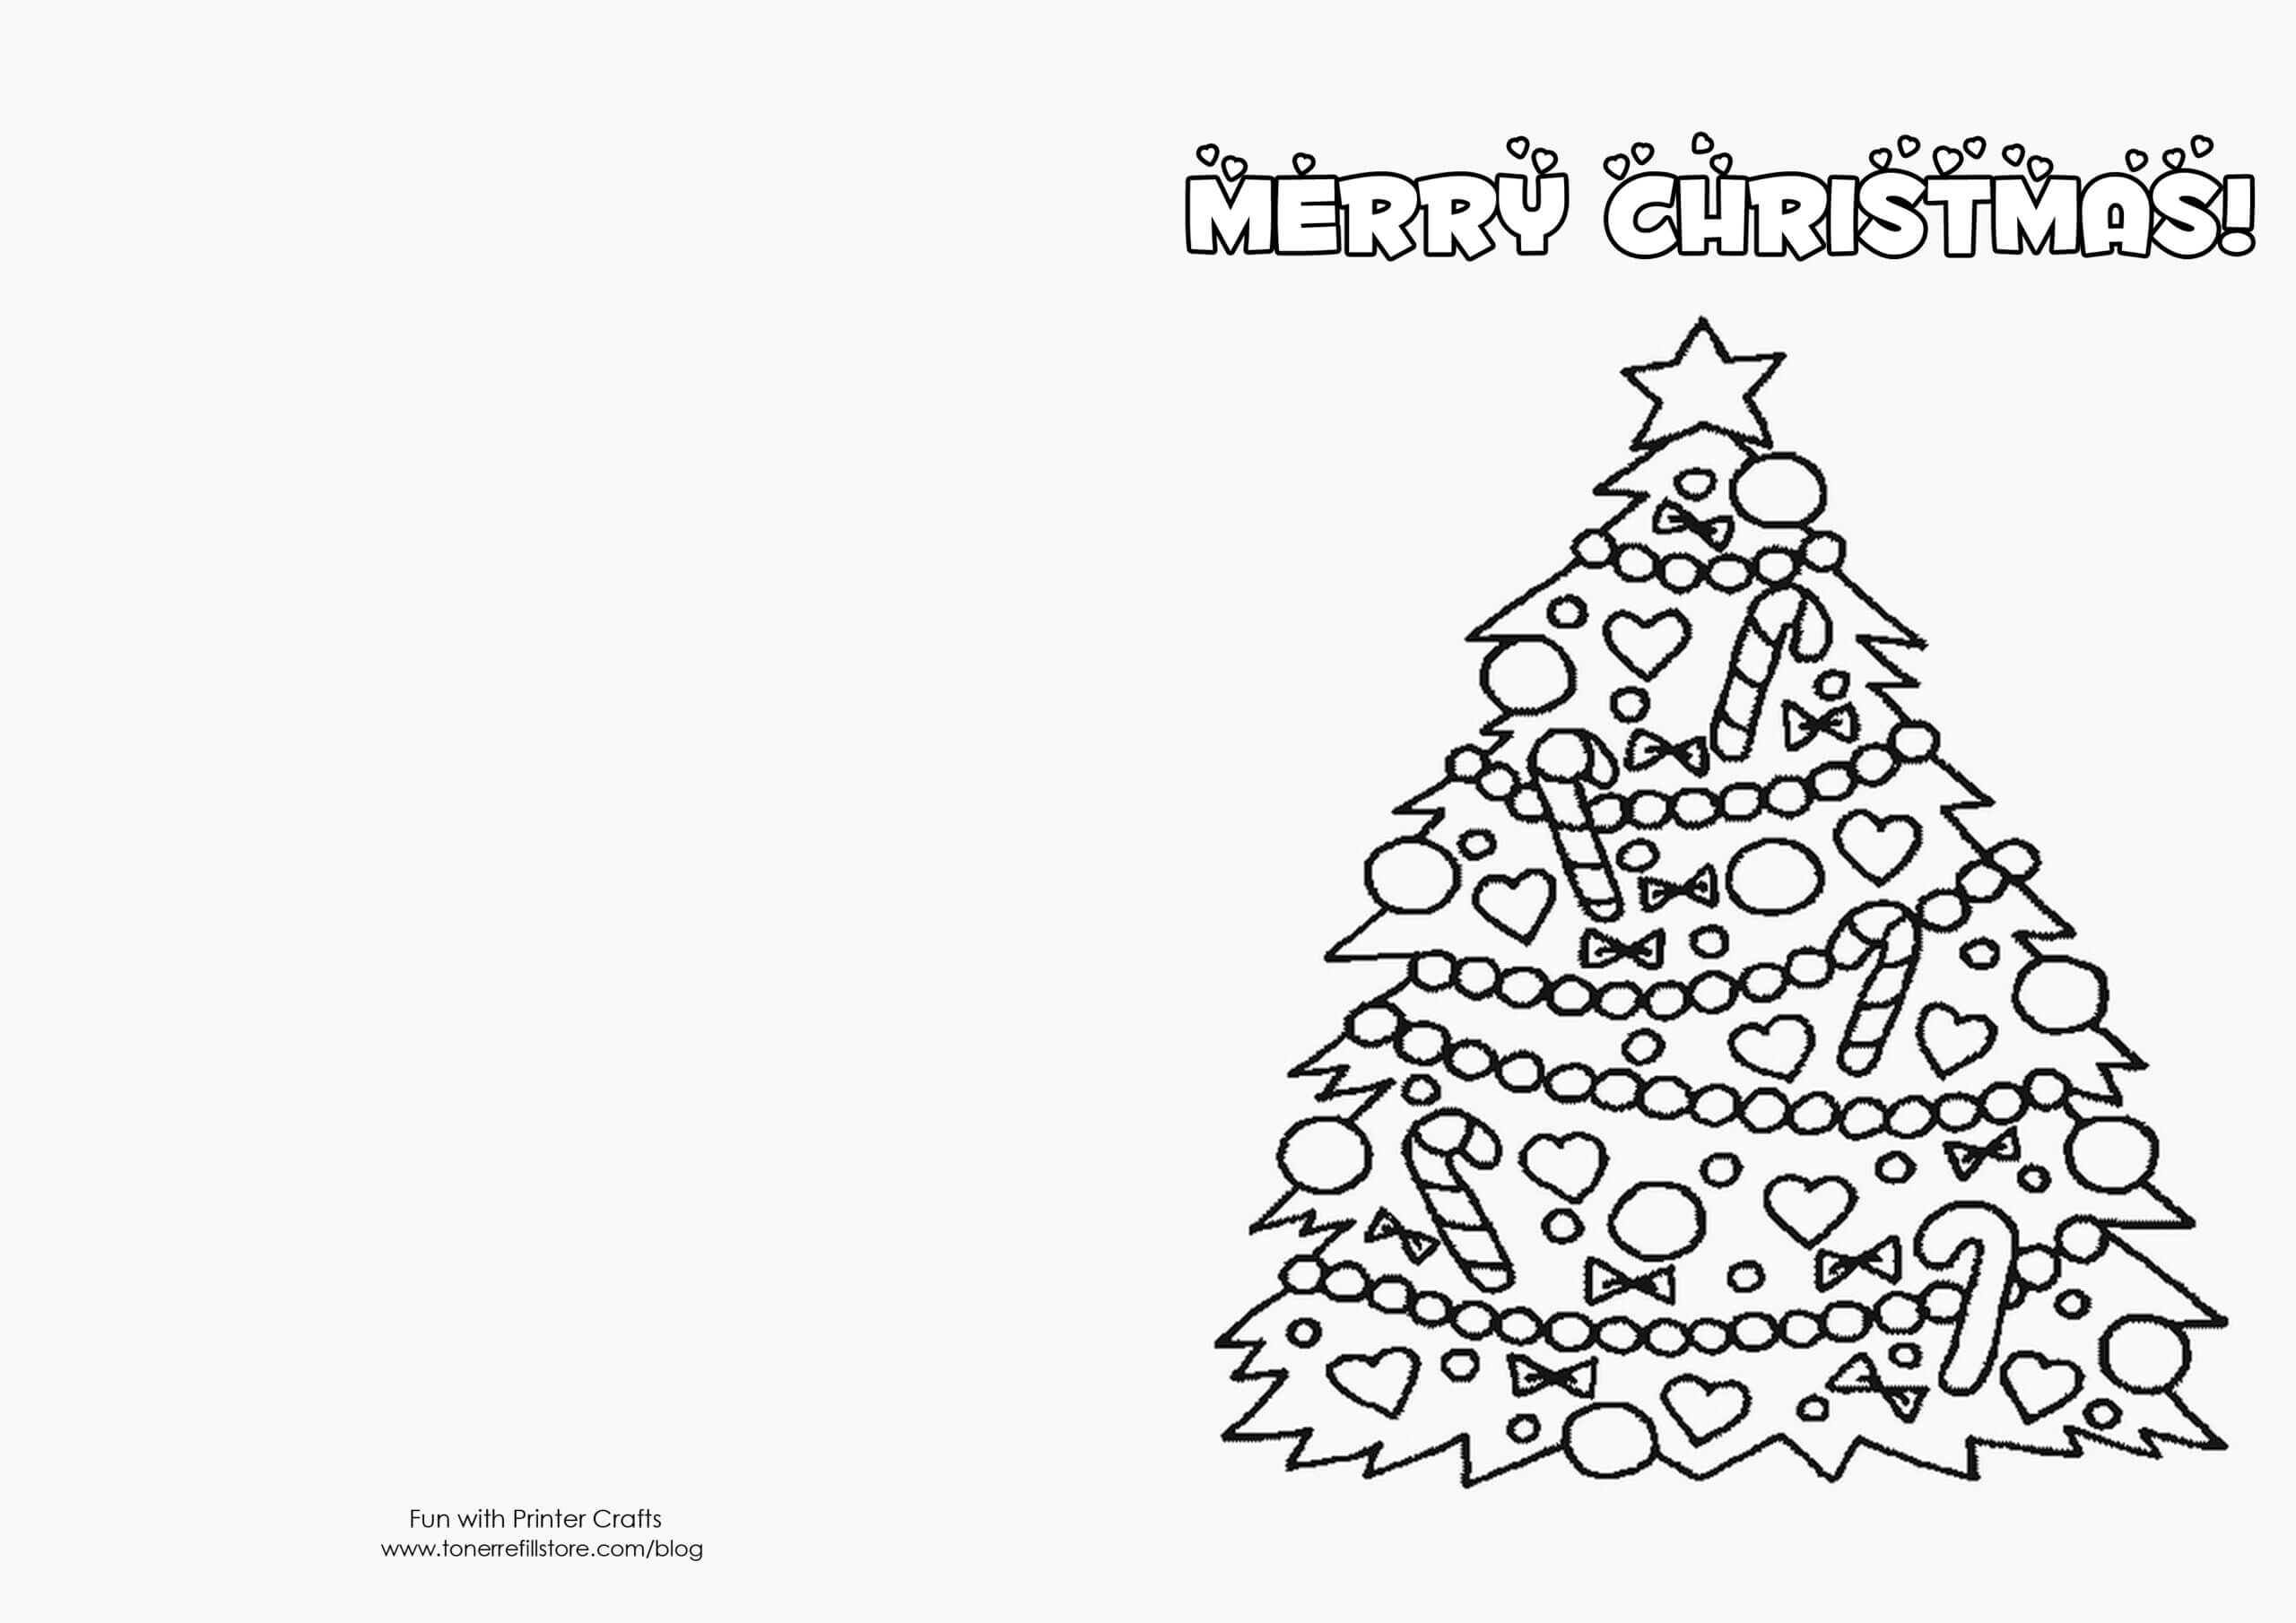 Free Printable Christmas Cards Templates – Zimer.bwong.co In Print Your Own Christmas Cards Templates